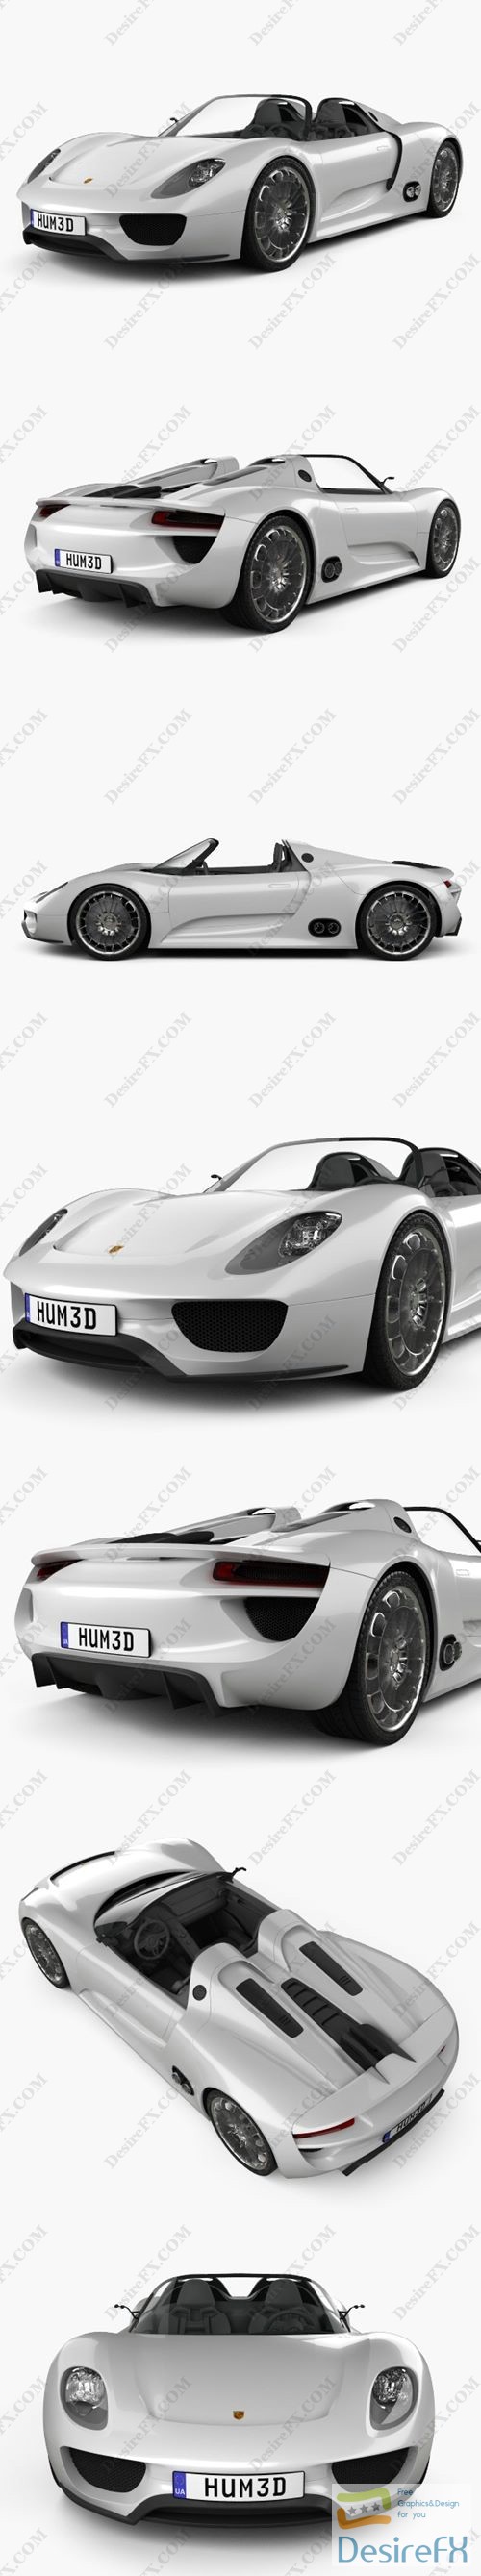 Porsche 918 spyder 2011 3D Model